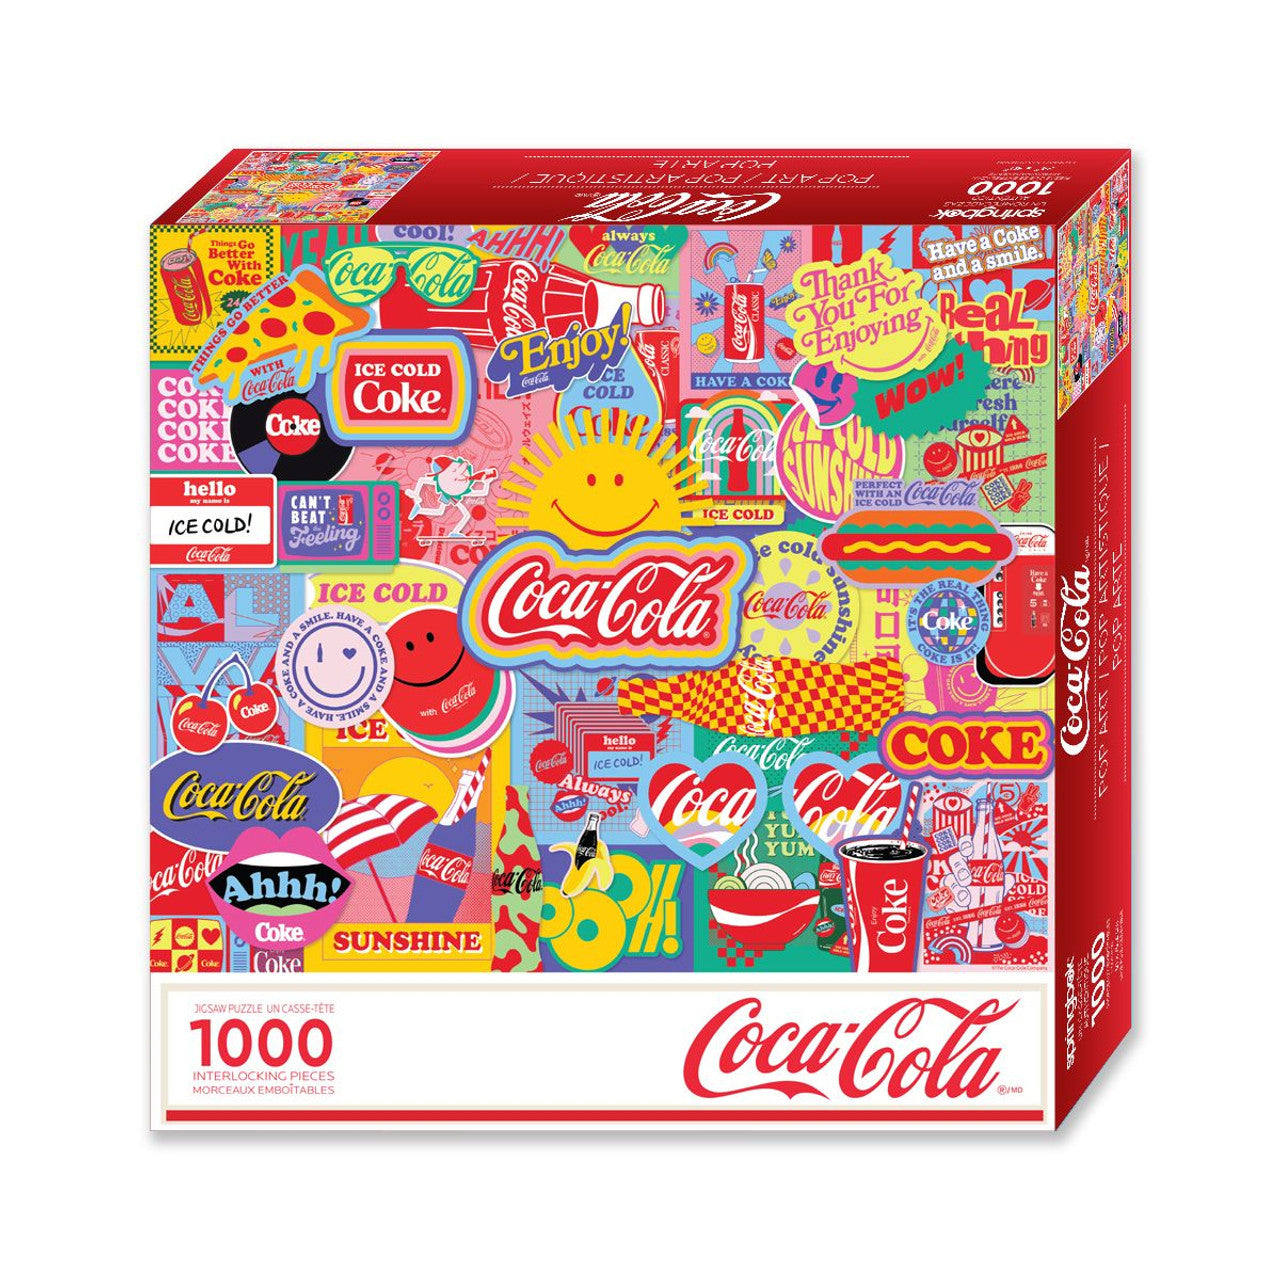 Coca-Cola Pop Art puzzle box